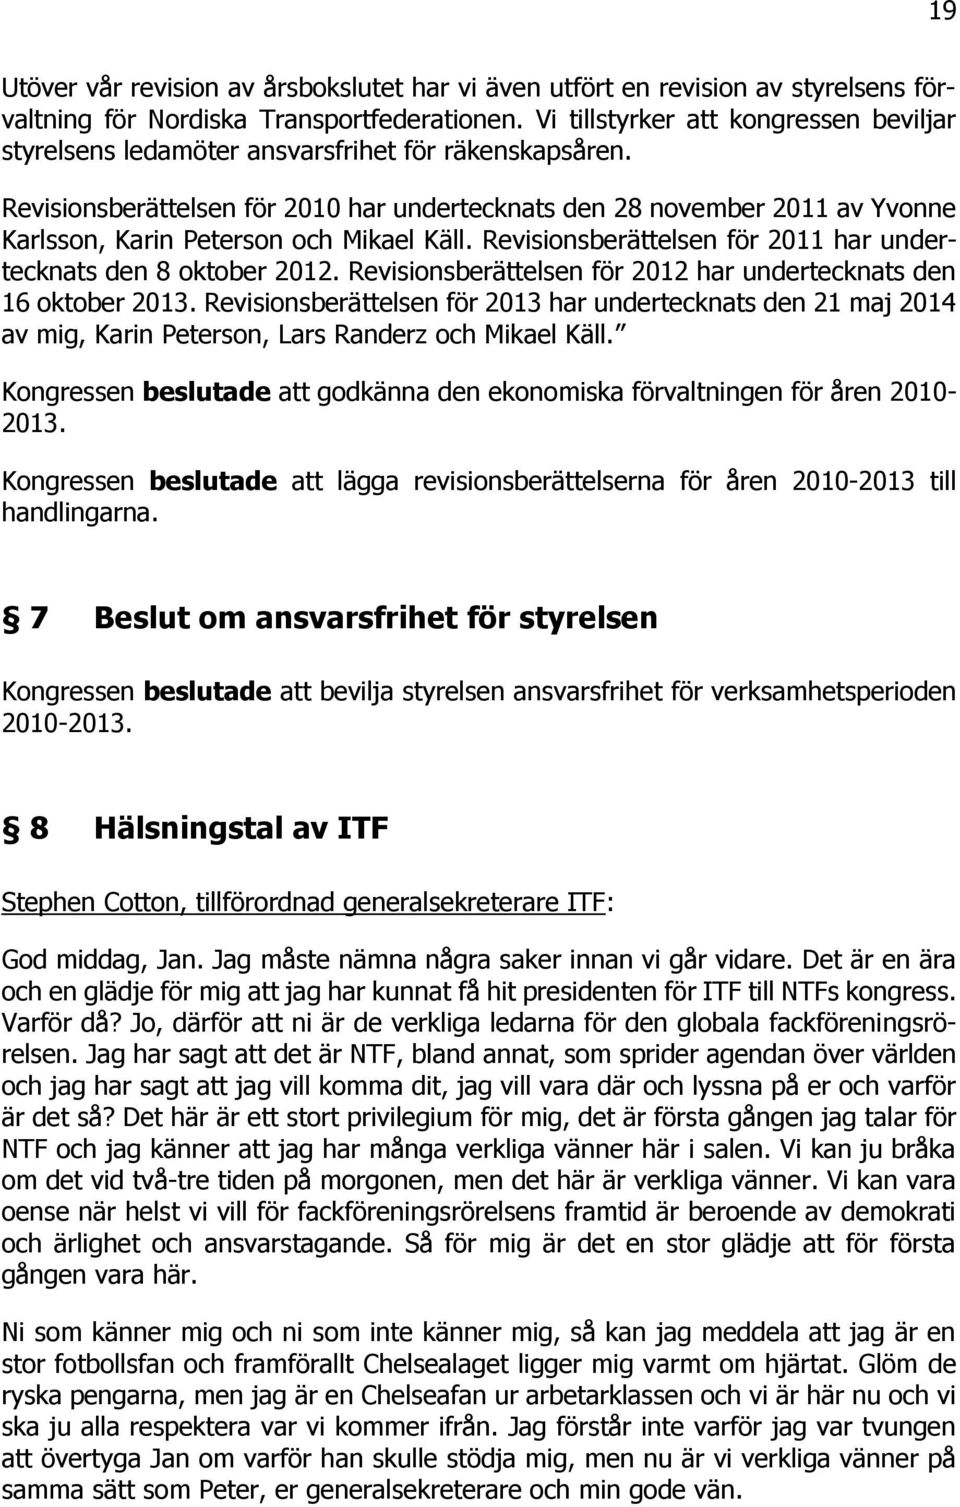 Revisionsberättelsen för 2010 har undertecknats den 28 november 2011 av Yvonne Karlsson, Karin Peterson och Mikael Käll. Revisionsberättelsen för 2011 har undertecknats den 8 oktober 2012.